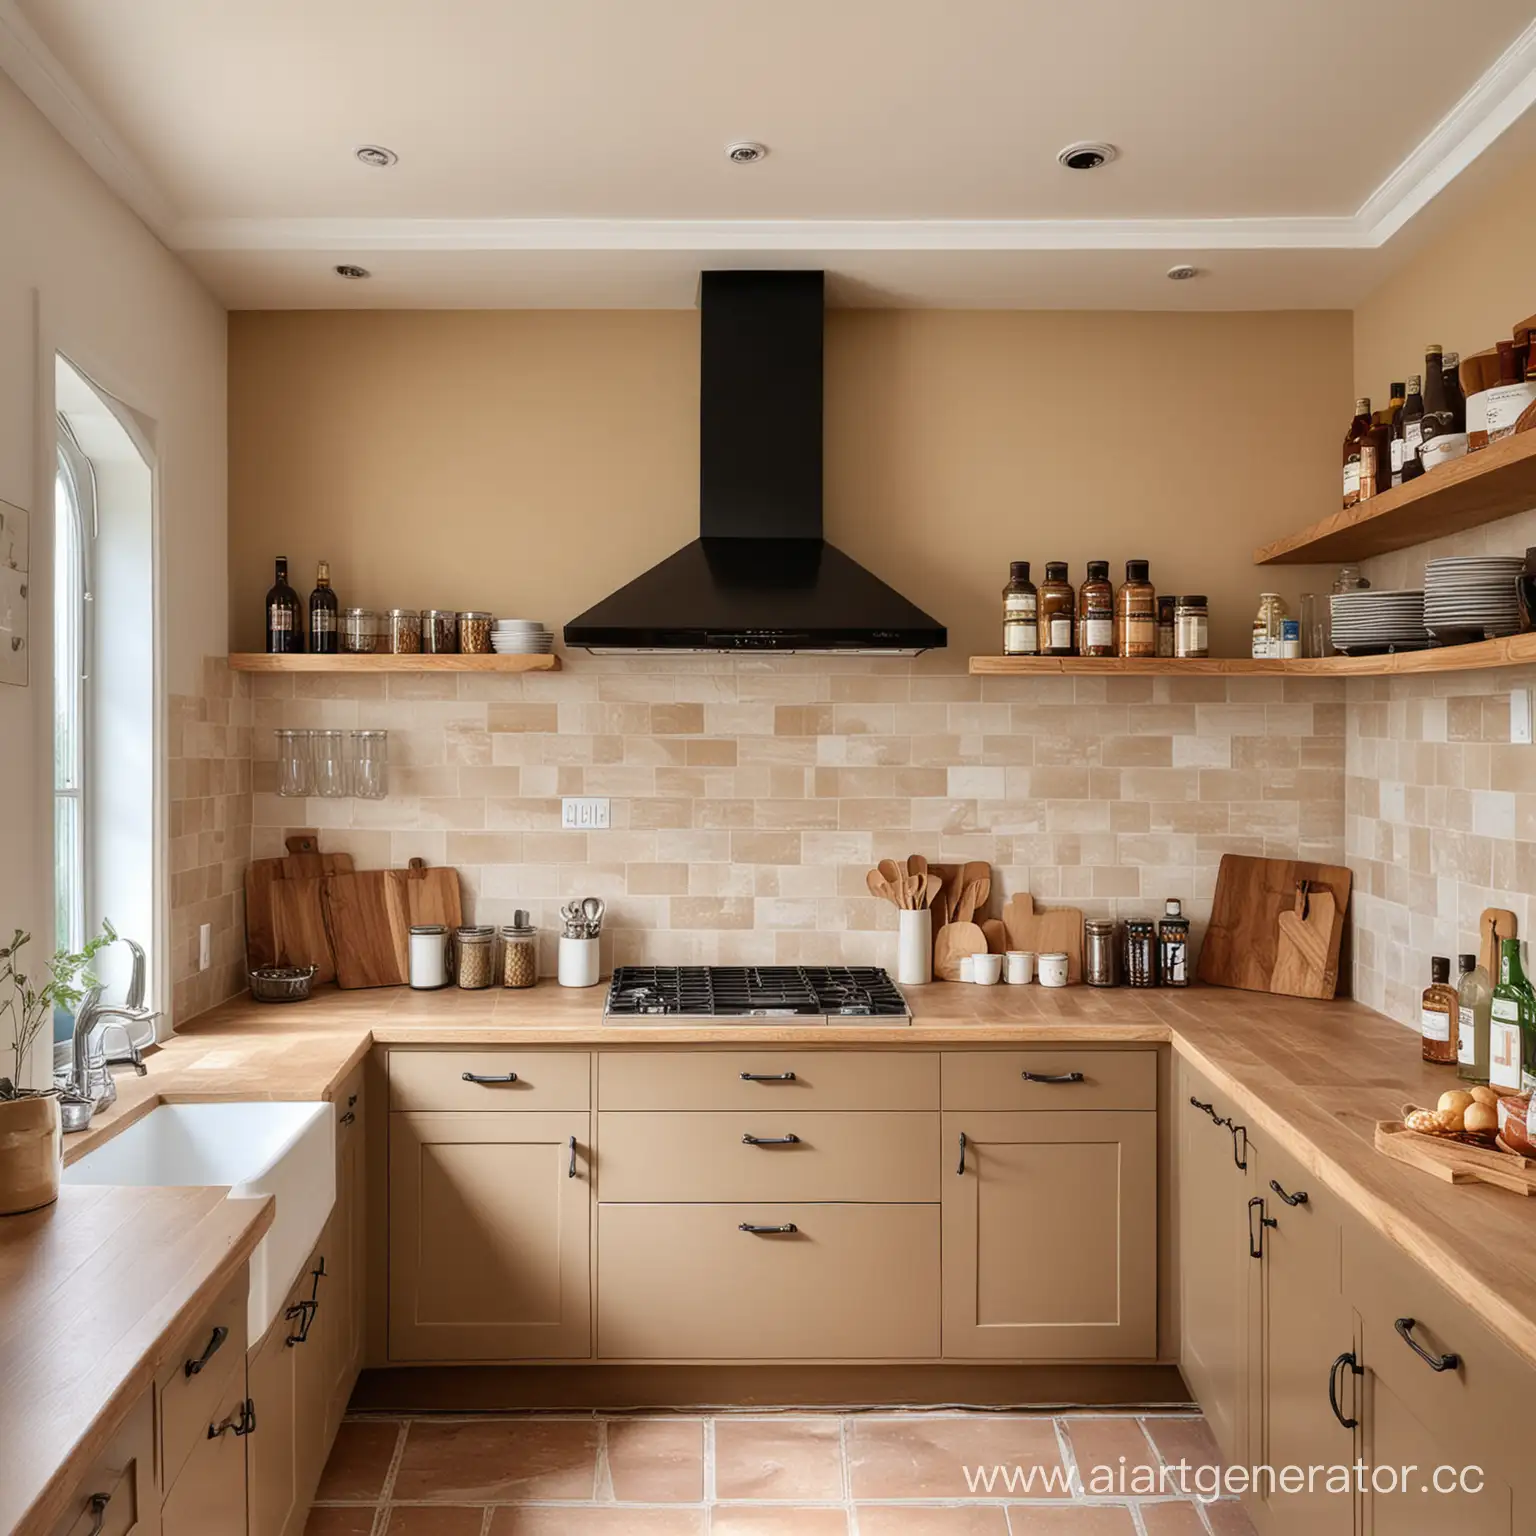 Modern-Kitchen-Interior-with-Beige-Walls-and-Minimalist-Design